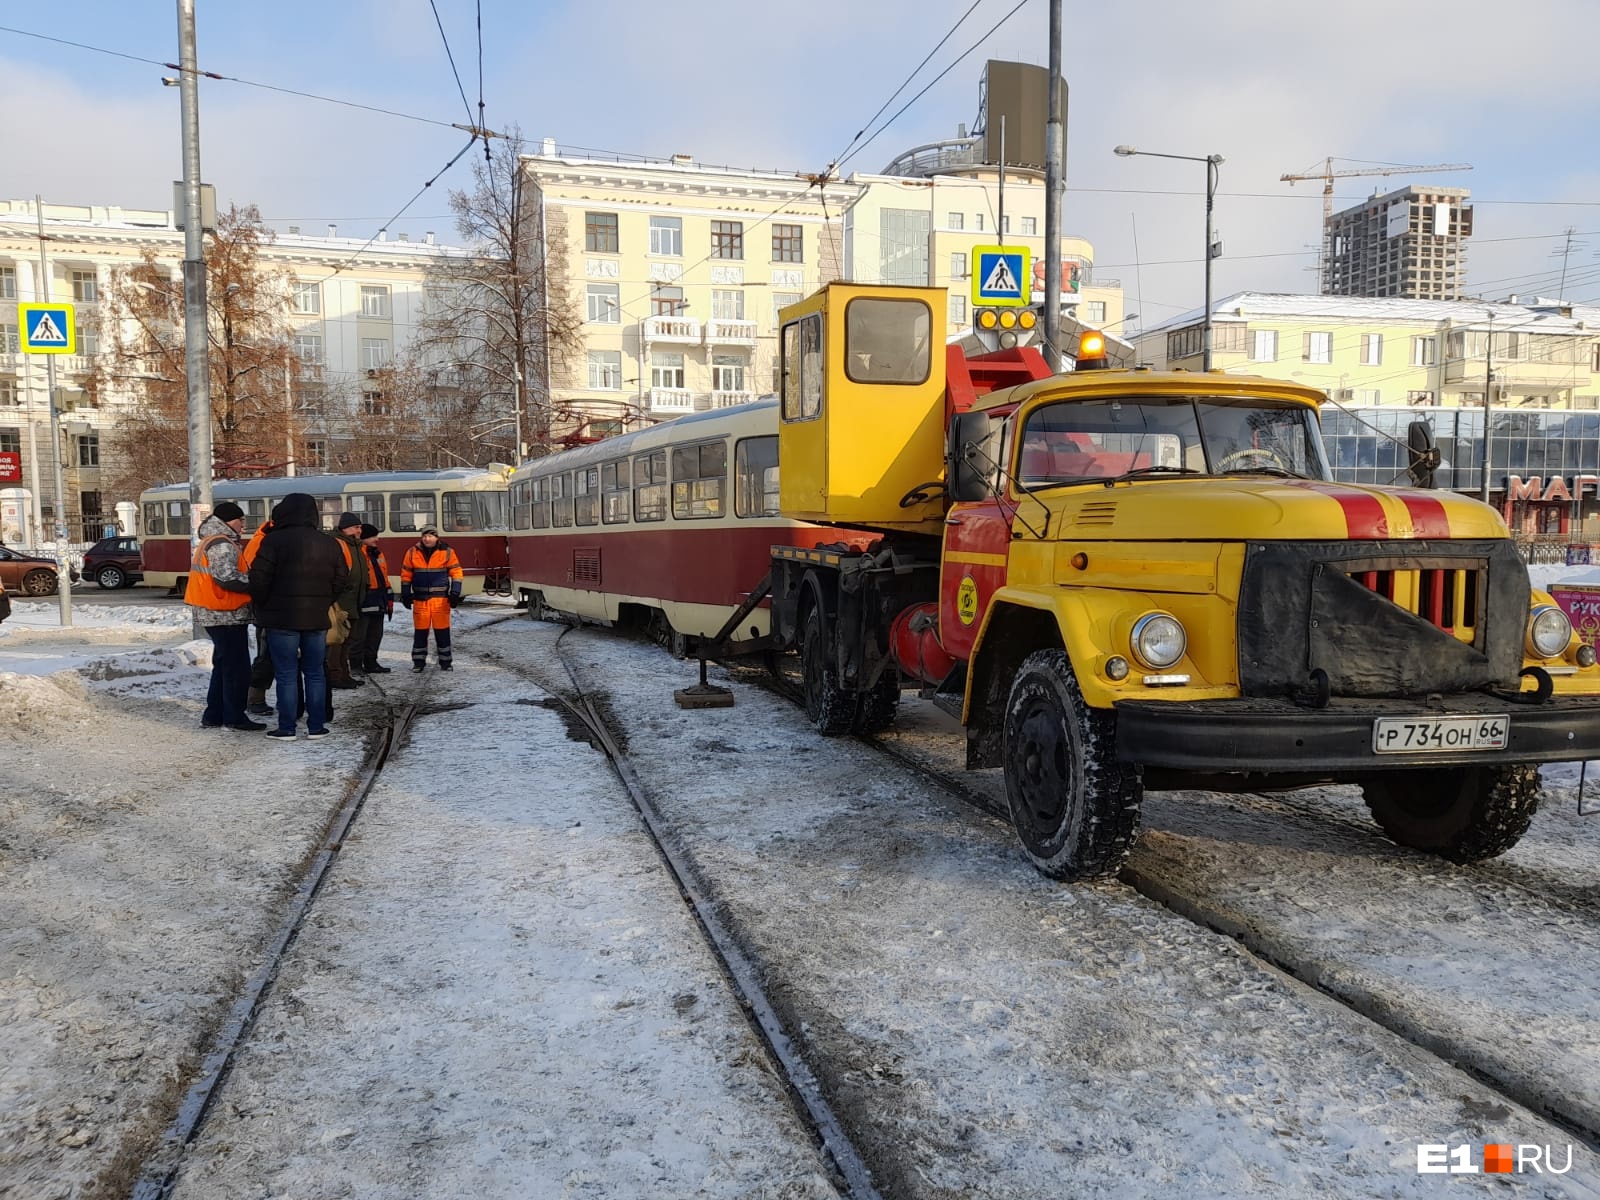 В центре Екатеринбурга сошел с рельсов трамвай. Он перекрыл части оживленной дороги